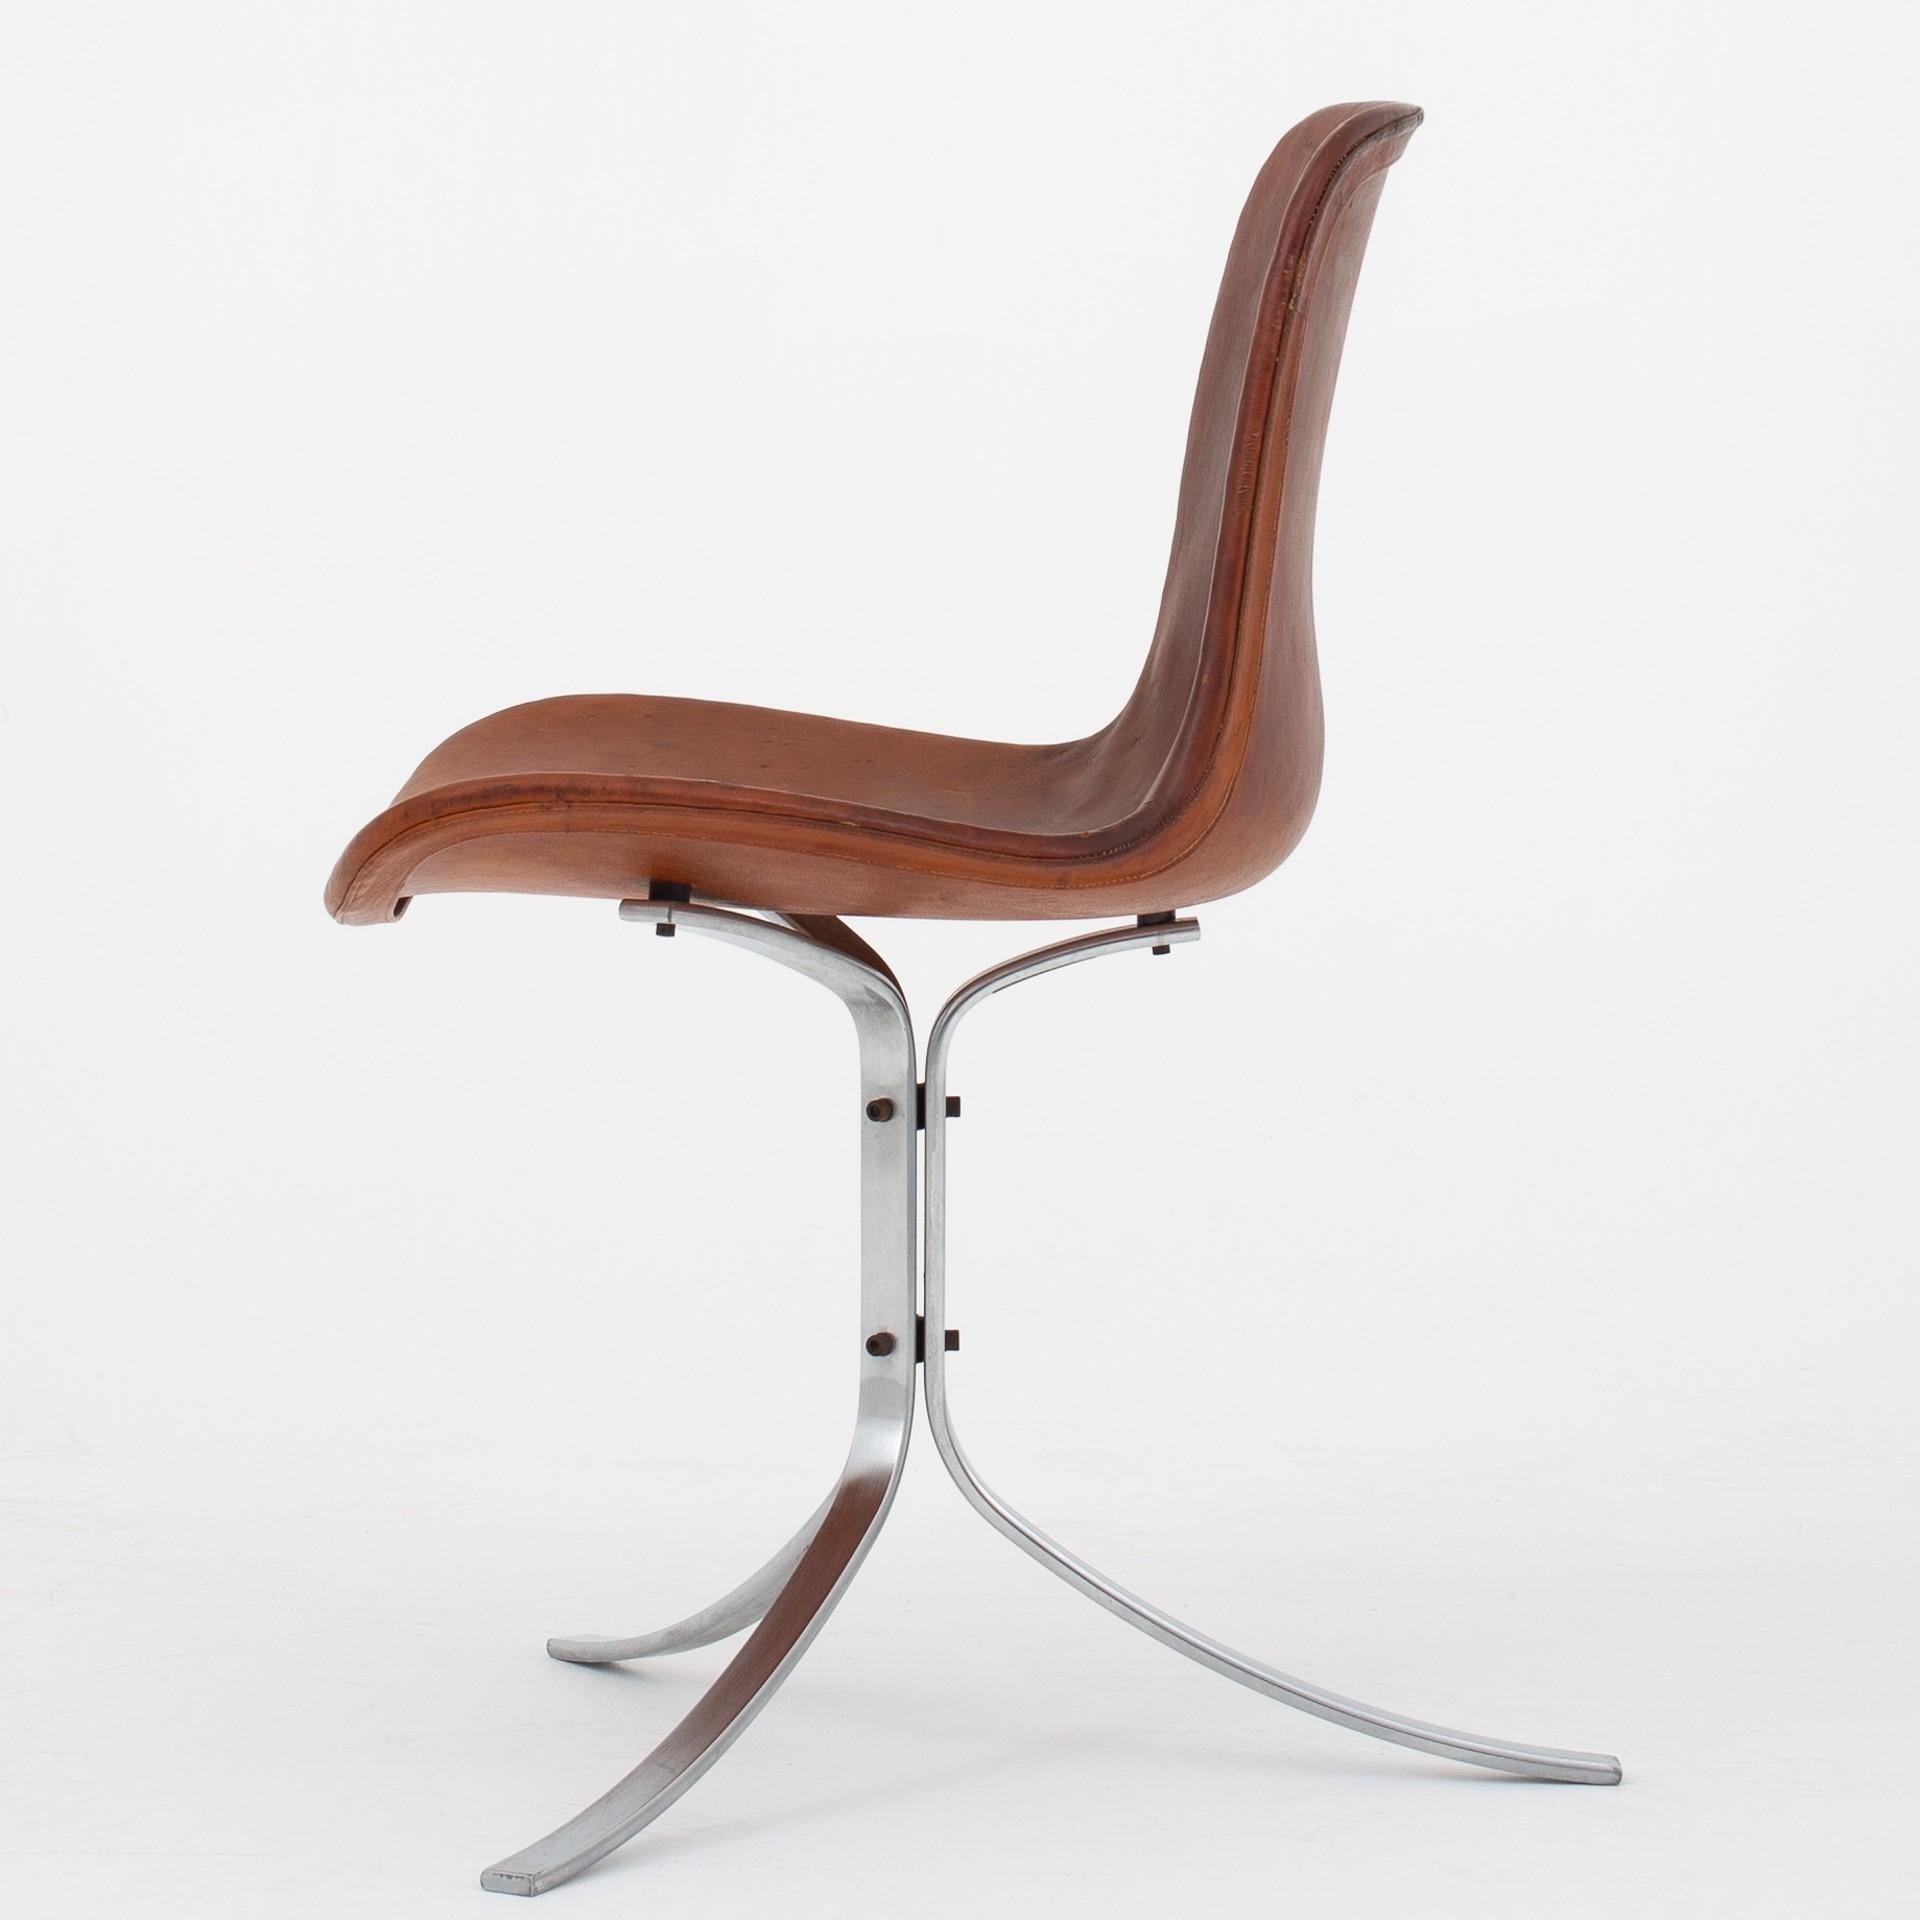 PK 9 - Chair in original, patinated cognac leather with frame in matt chromed steel. Designed in 1960. Maker E. Kold Christensen.